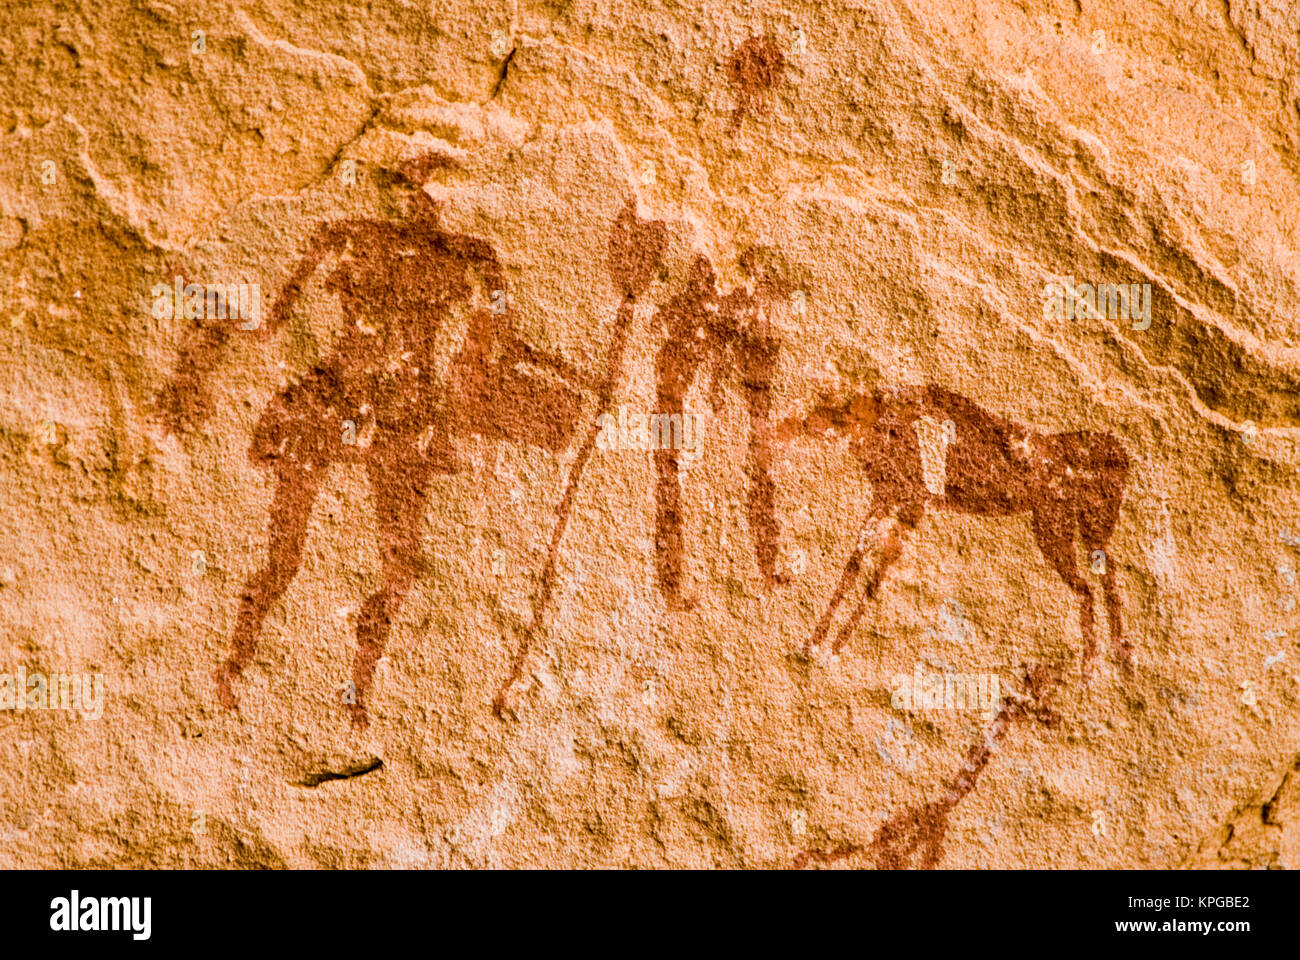 Prehistoric Graffiti Immagini E Fotos Stock Alamy